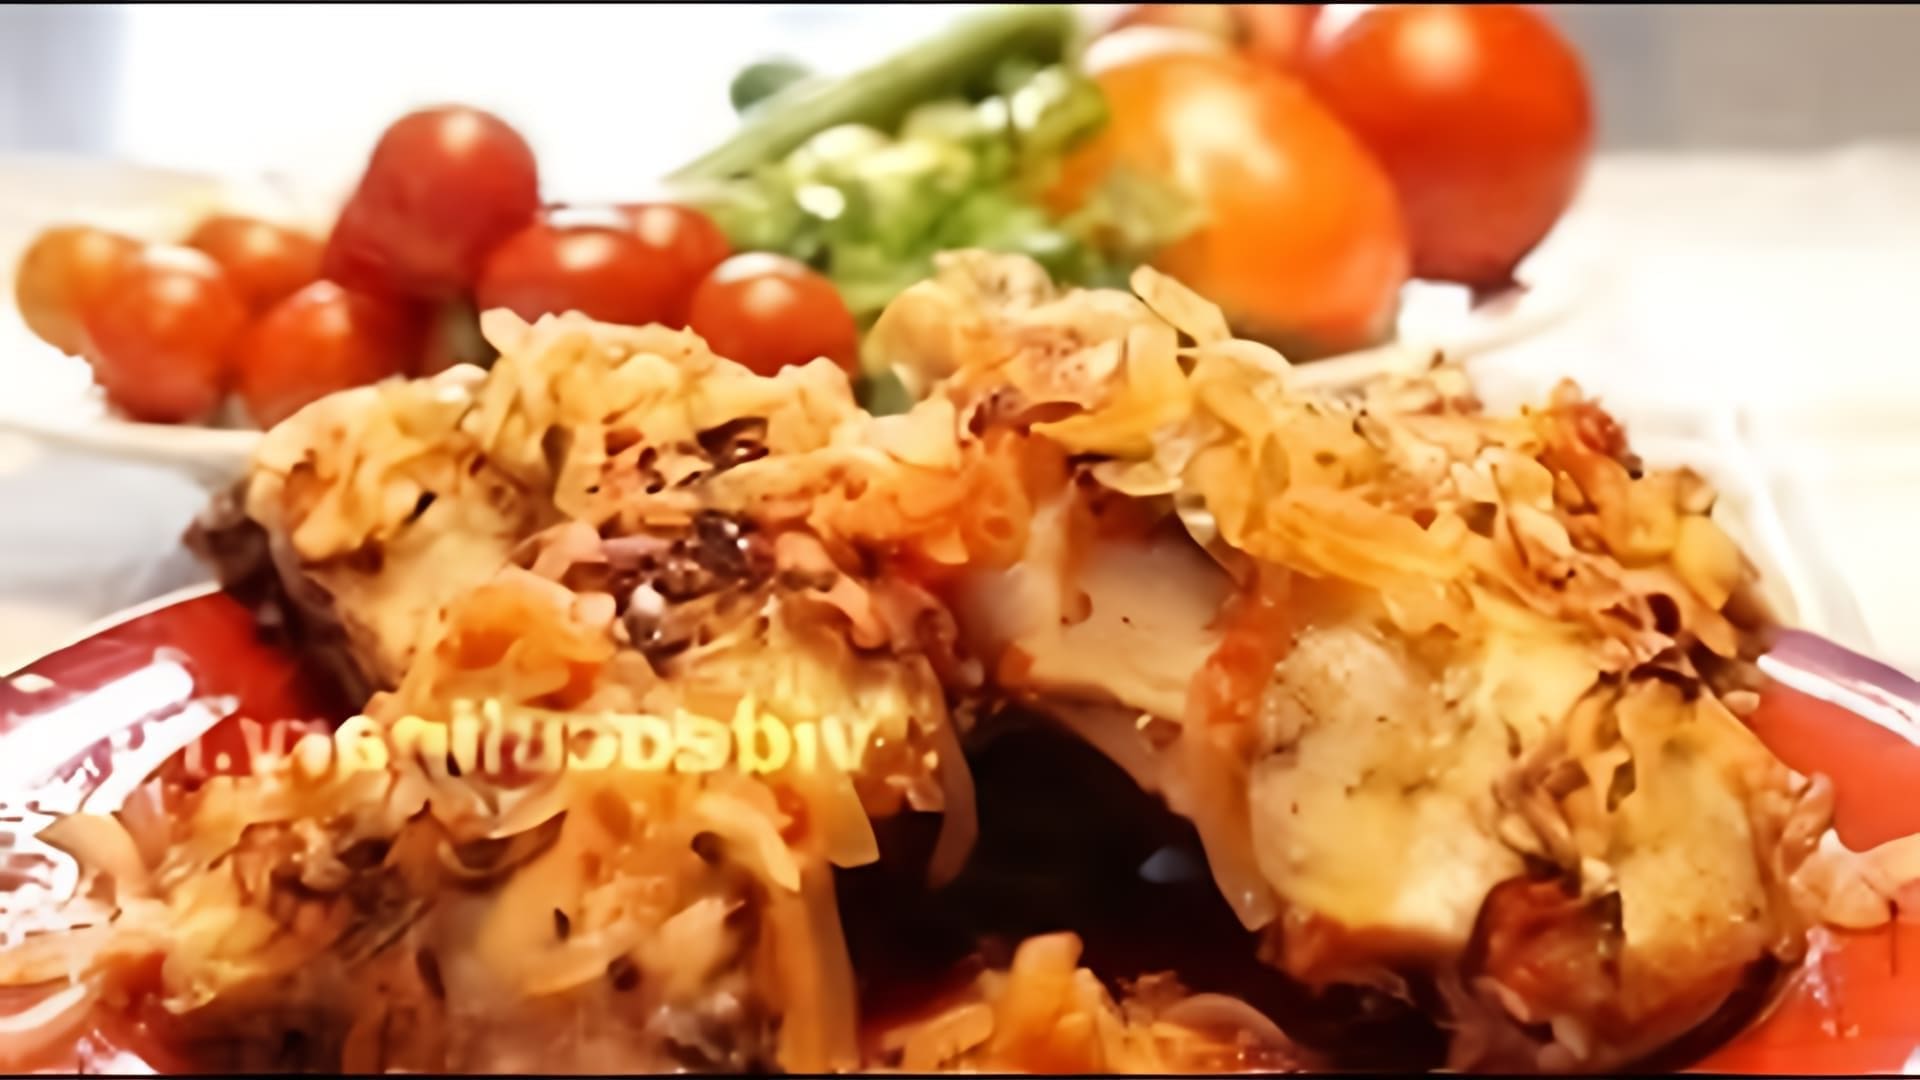 В этом видео демонстрируется рецепт приготовления куриных окорочков в маринаде